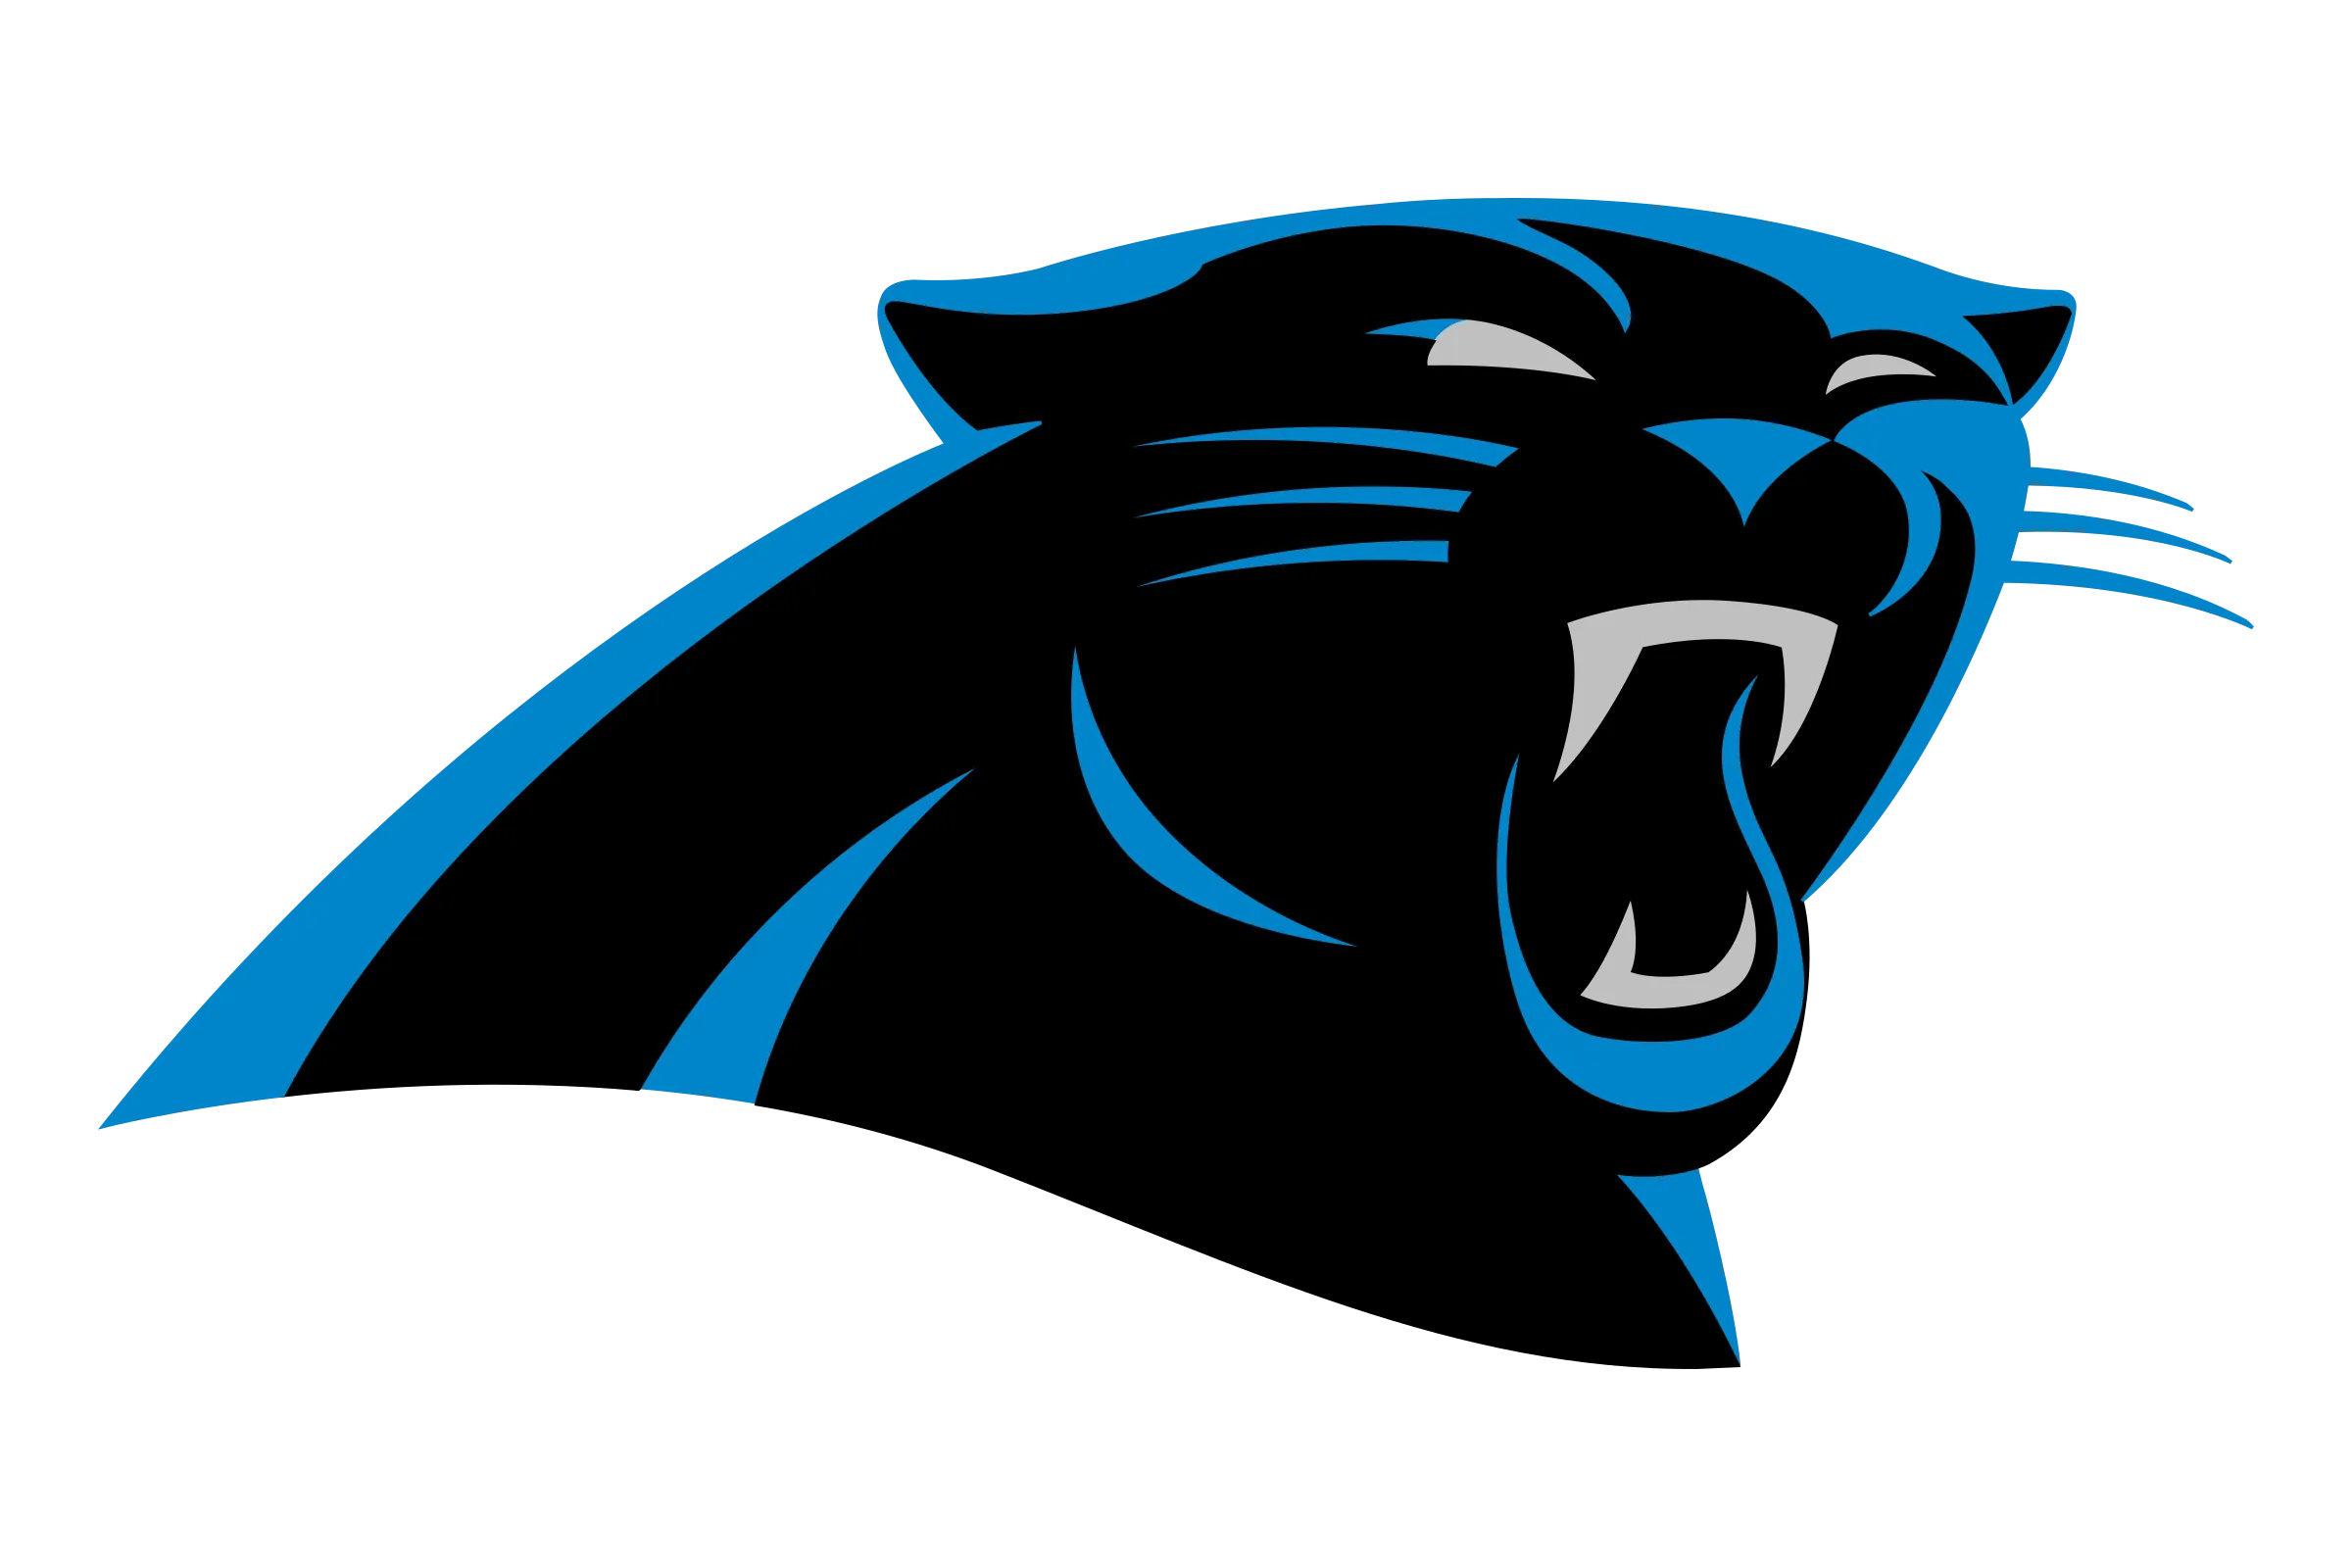  Carolina Panthers